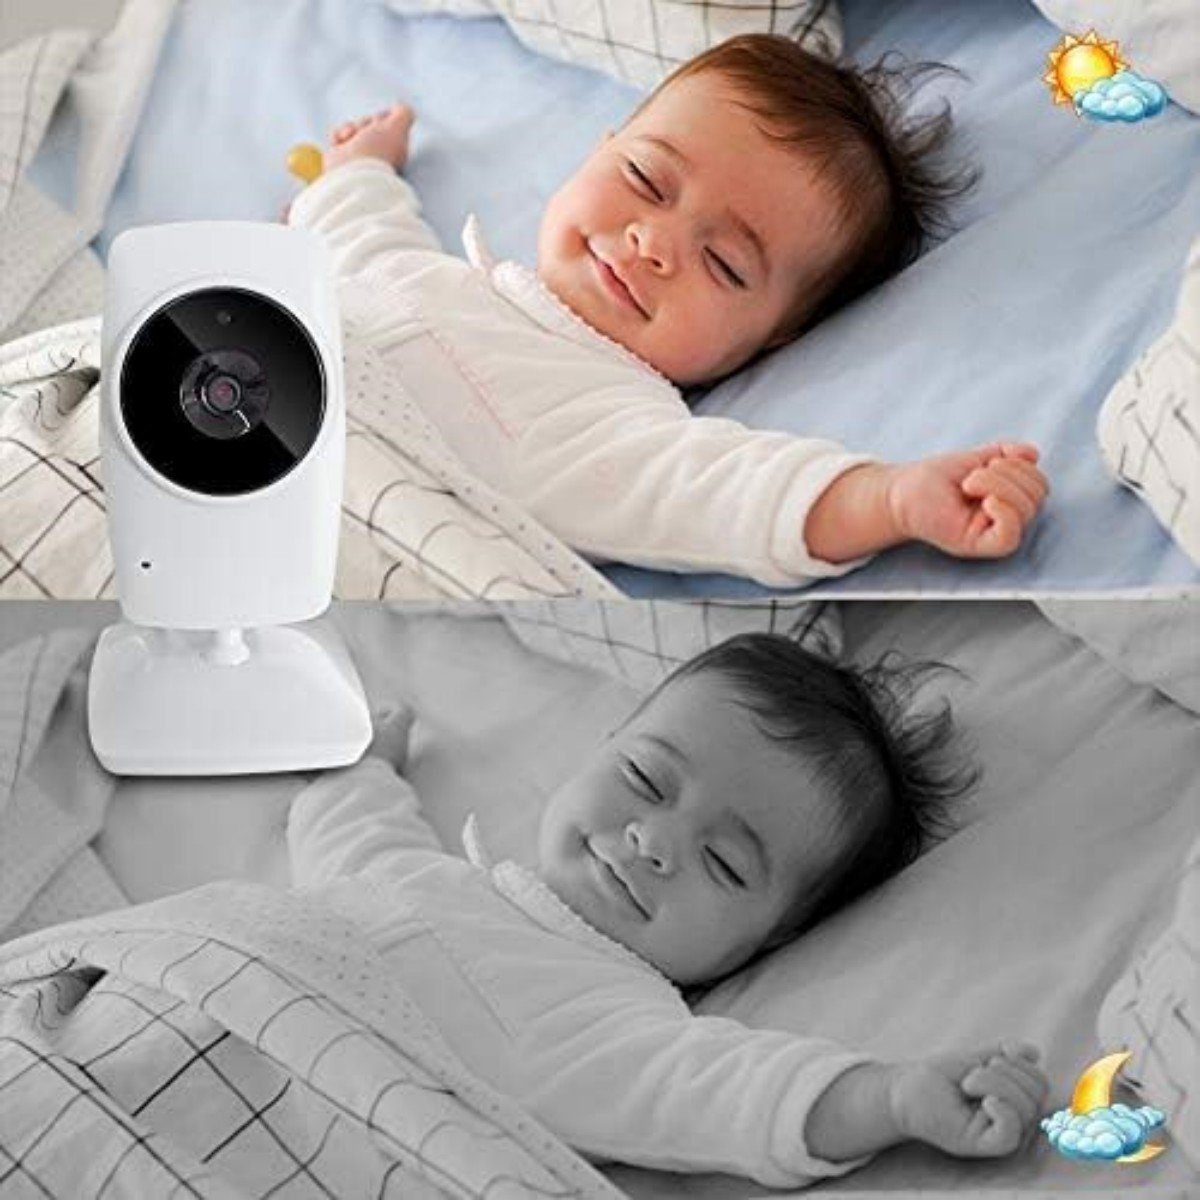 Welikera Babyphone Baby mit Monitor Nachtsicht Gegensprechfunktion, 2,4 GHz Video, Kamera